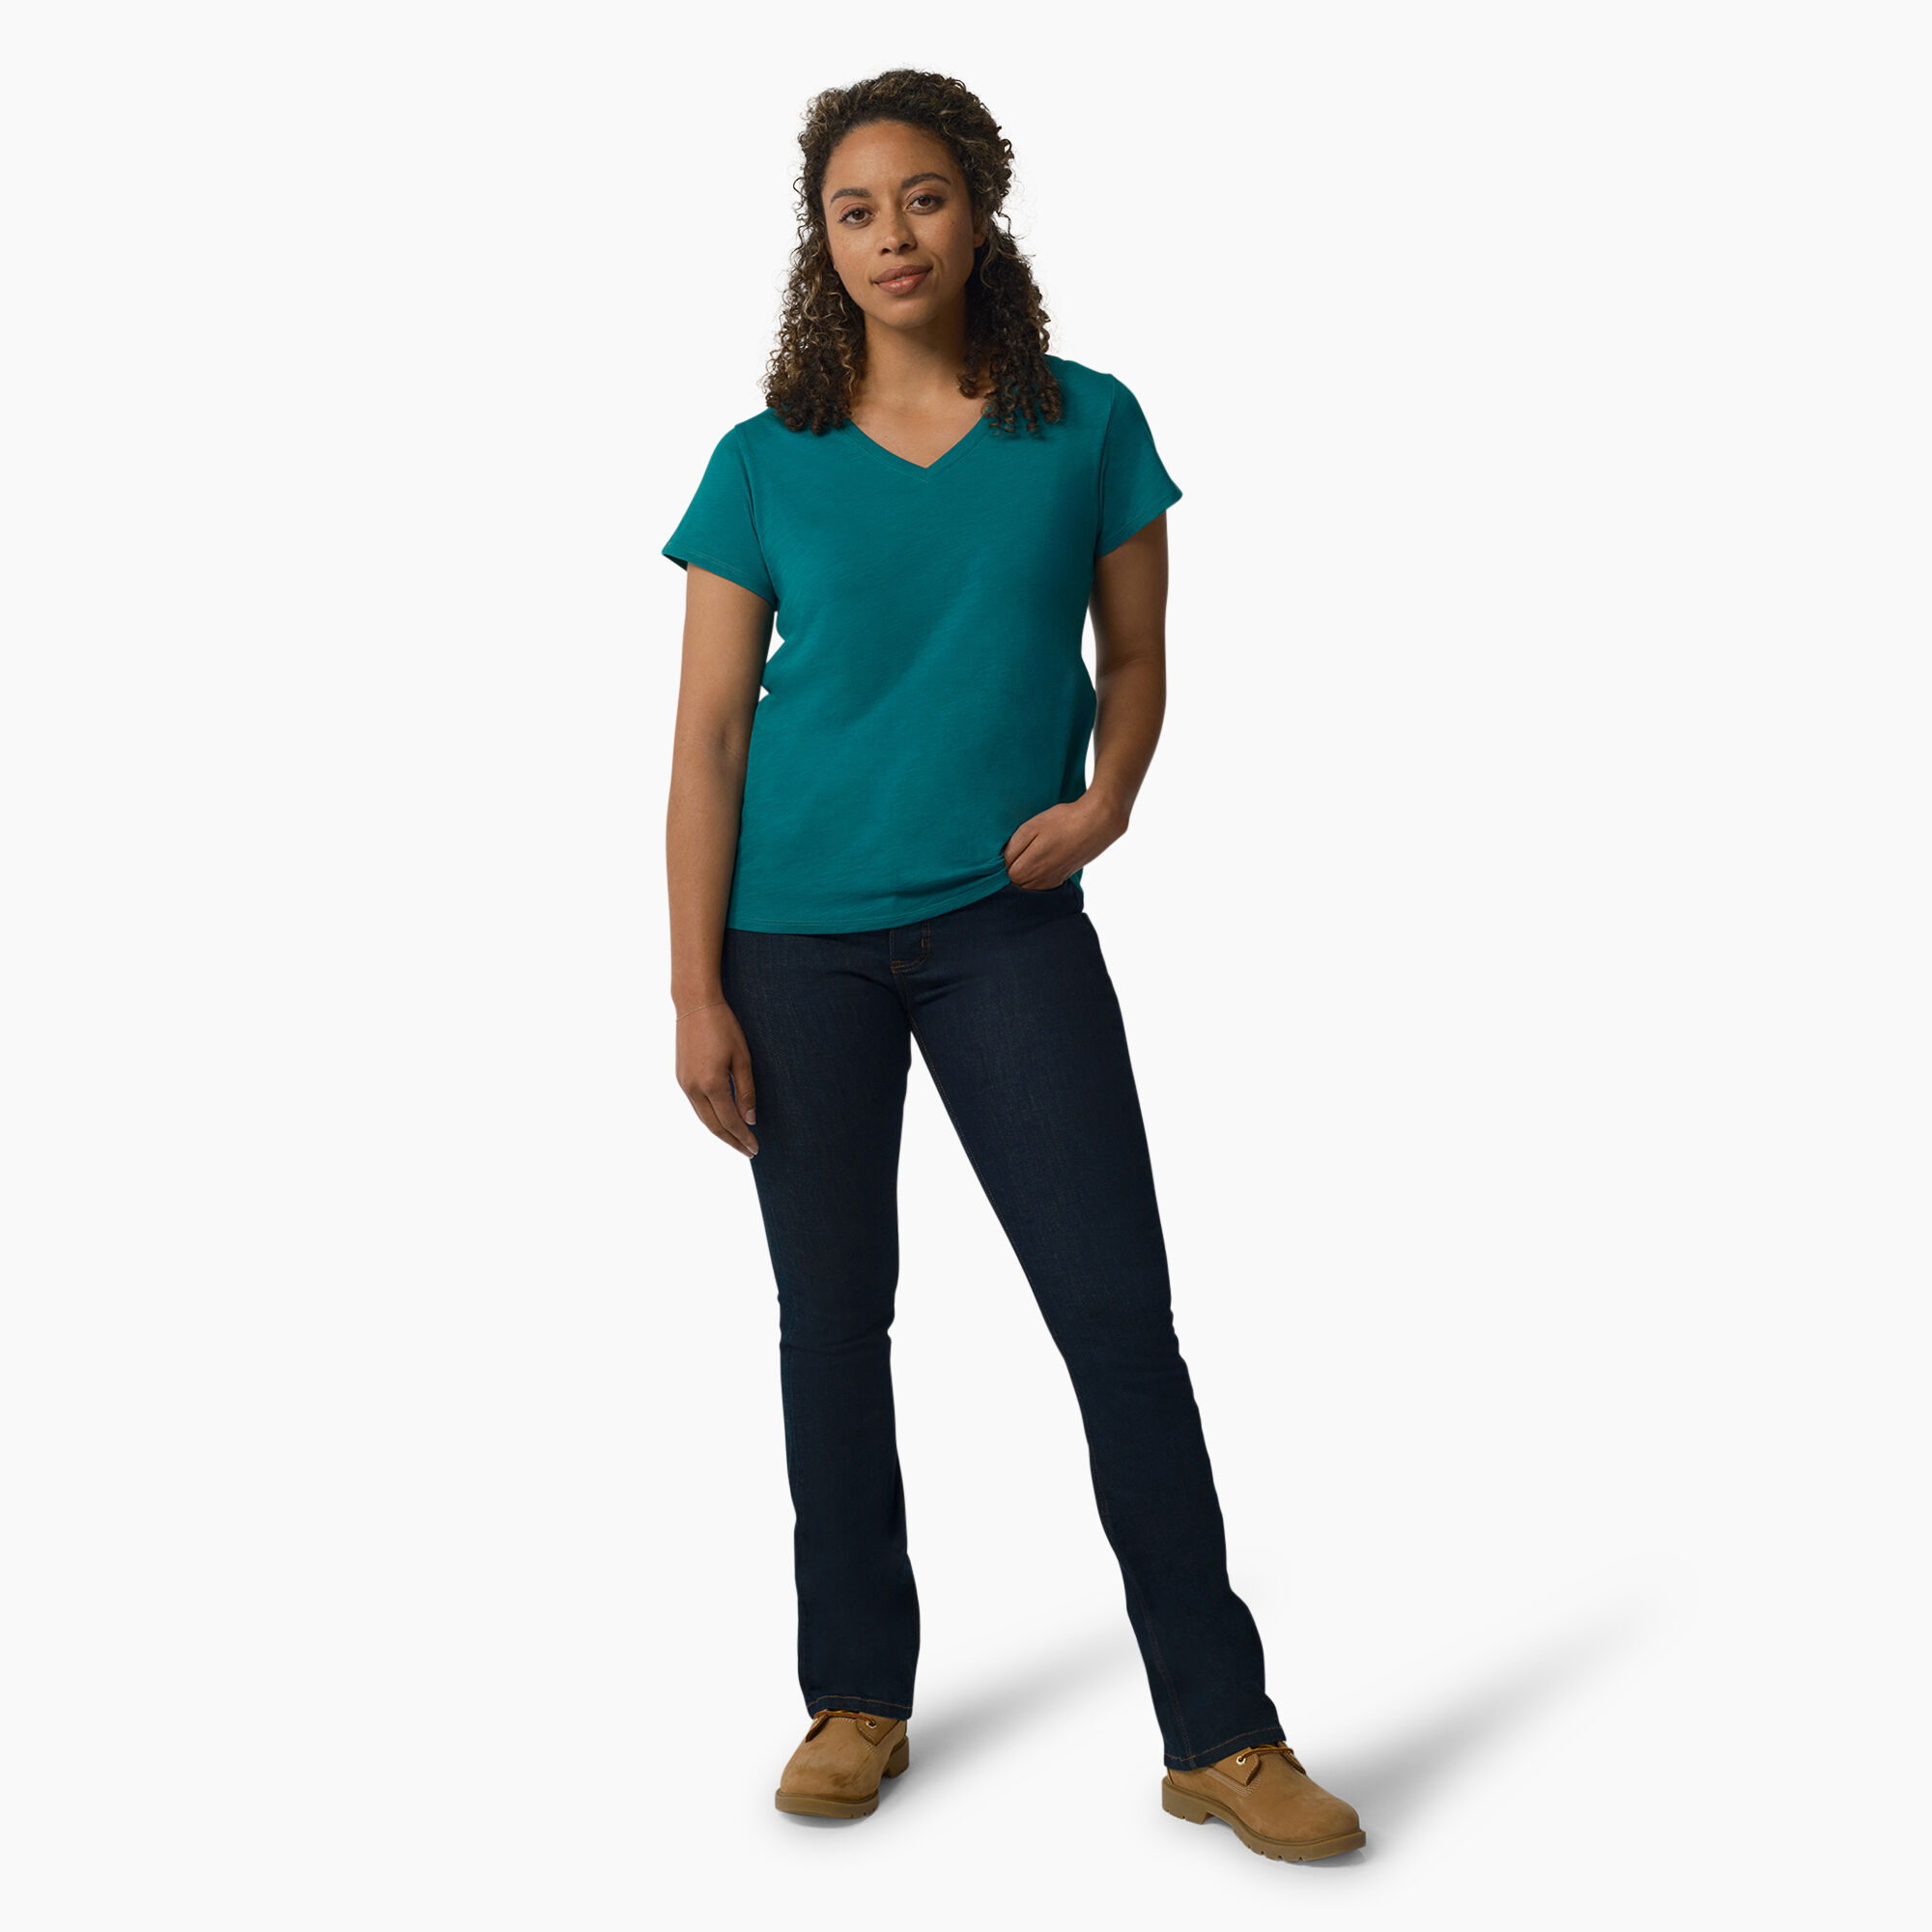 T-shirt à encolure en V et manches courtes pour femmes